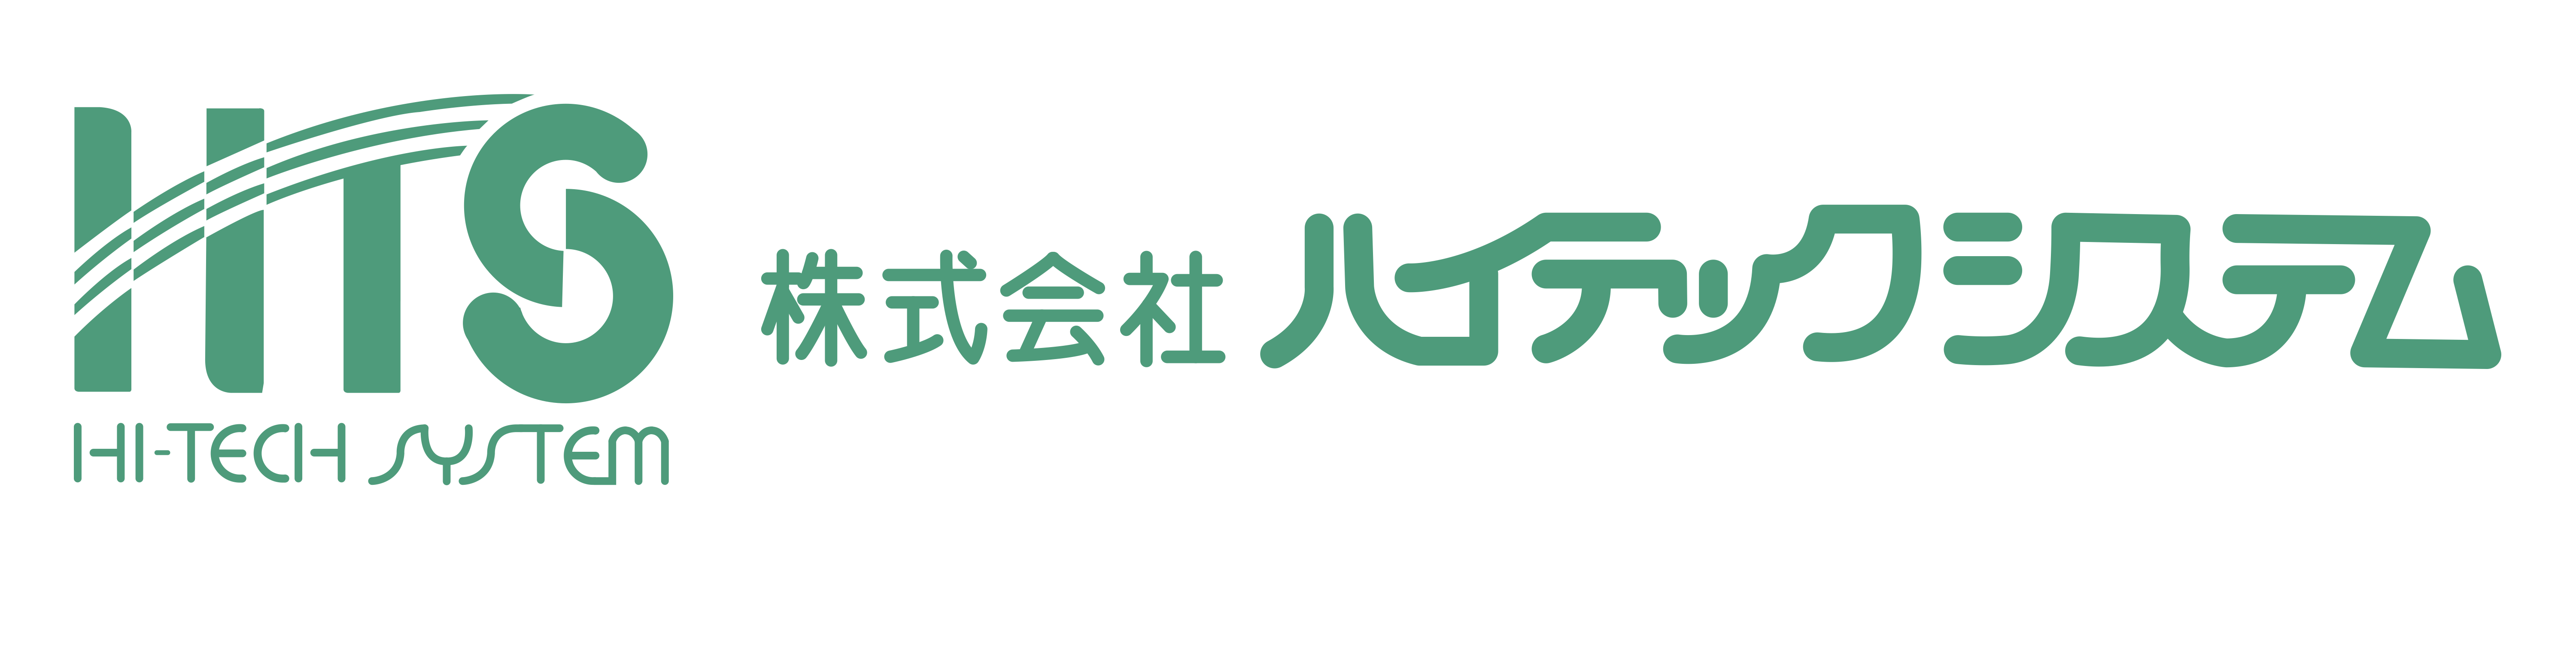 株式会社ハイテックシステムのロゴ